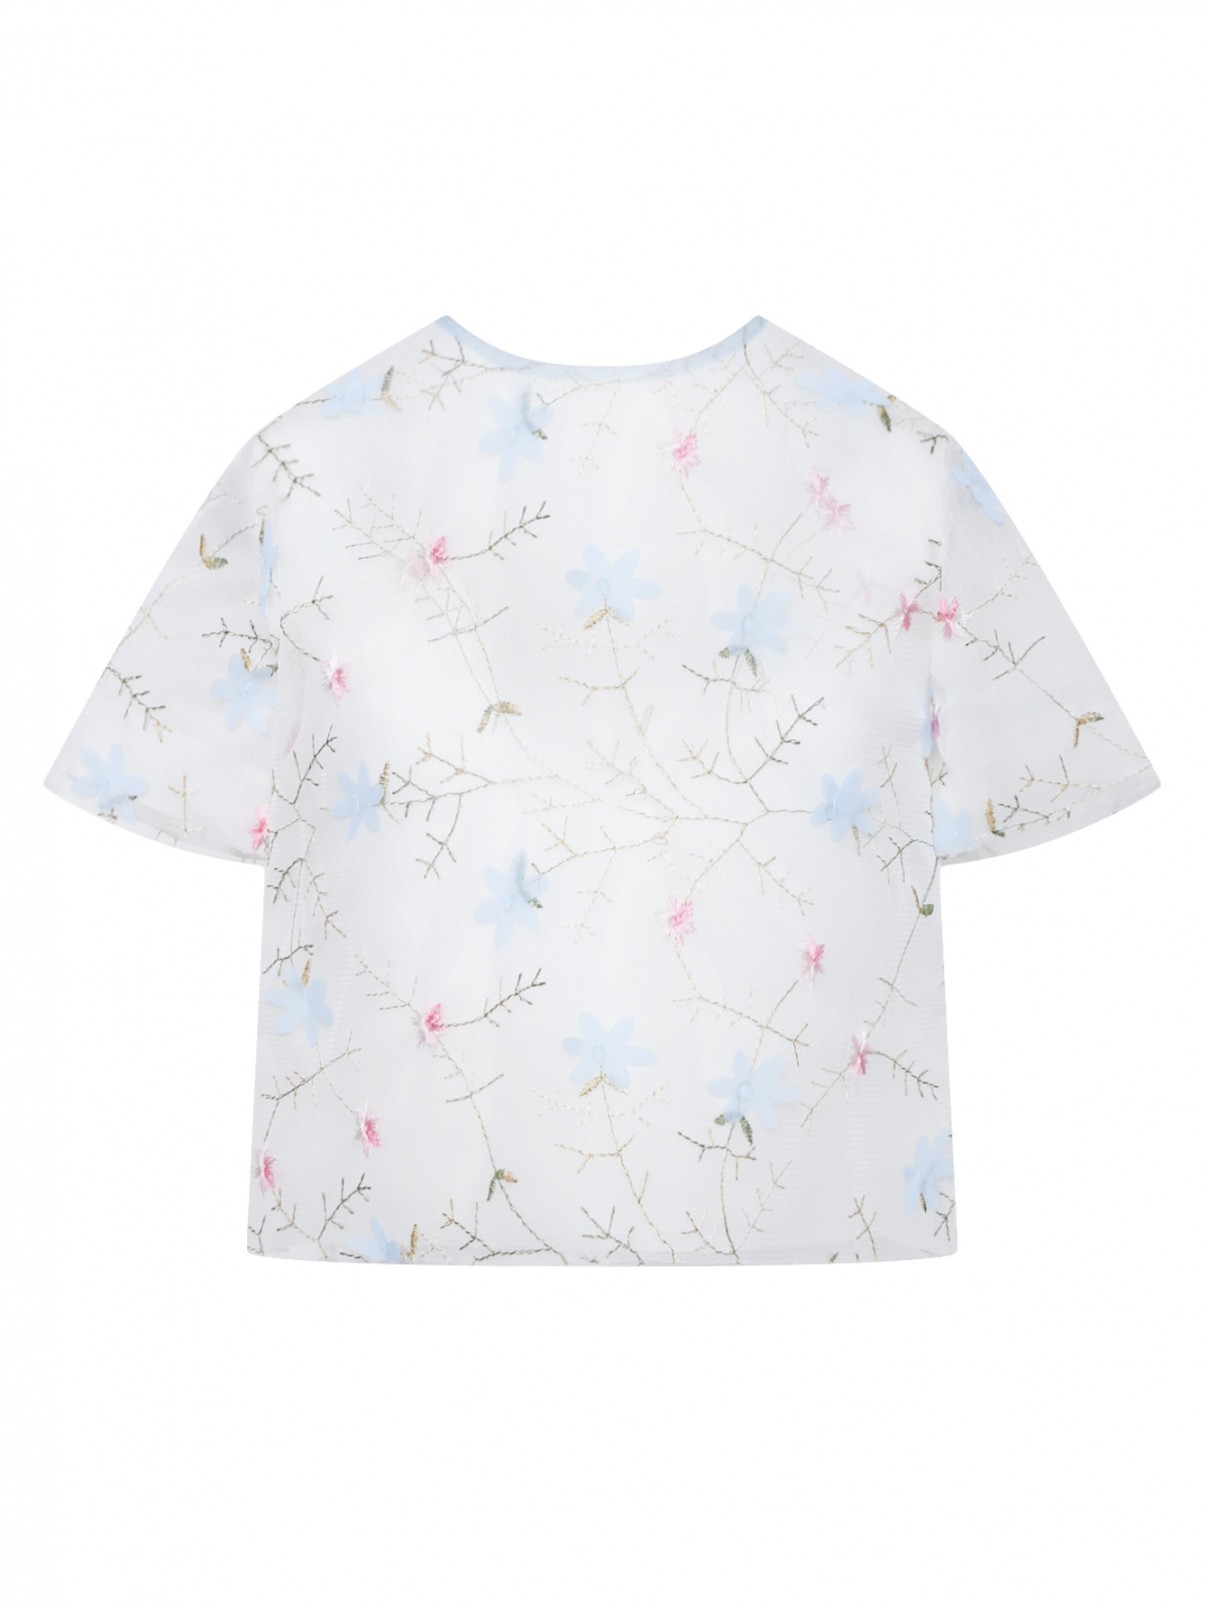 Полупрозрачная блуза из шелка с цветочным узором MiMiSol  –  Общий вид  – Цвет:  Белый